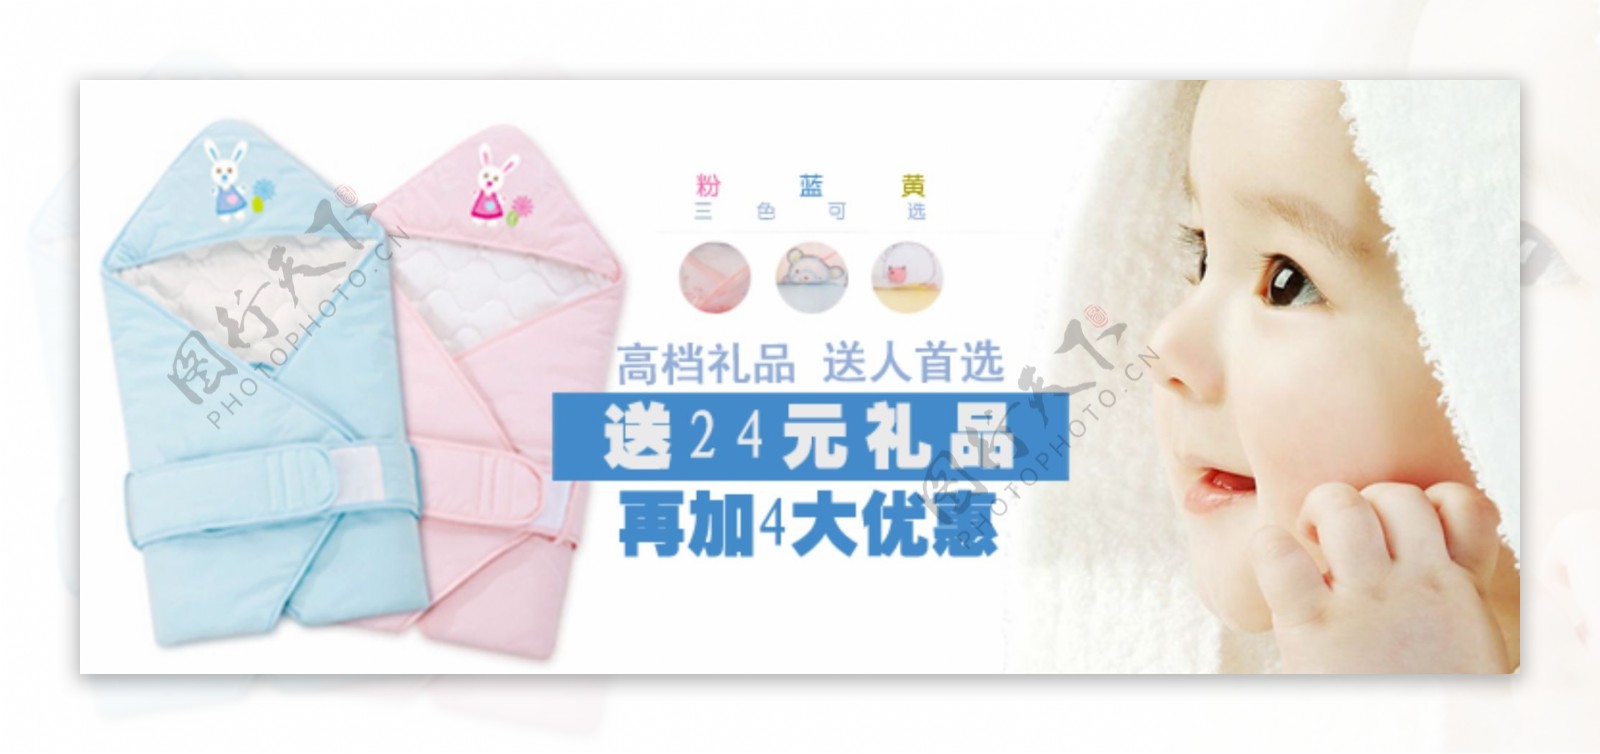 清新简约风格淘宝婴儿包被海报模板下载